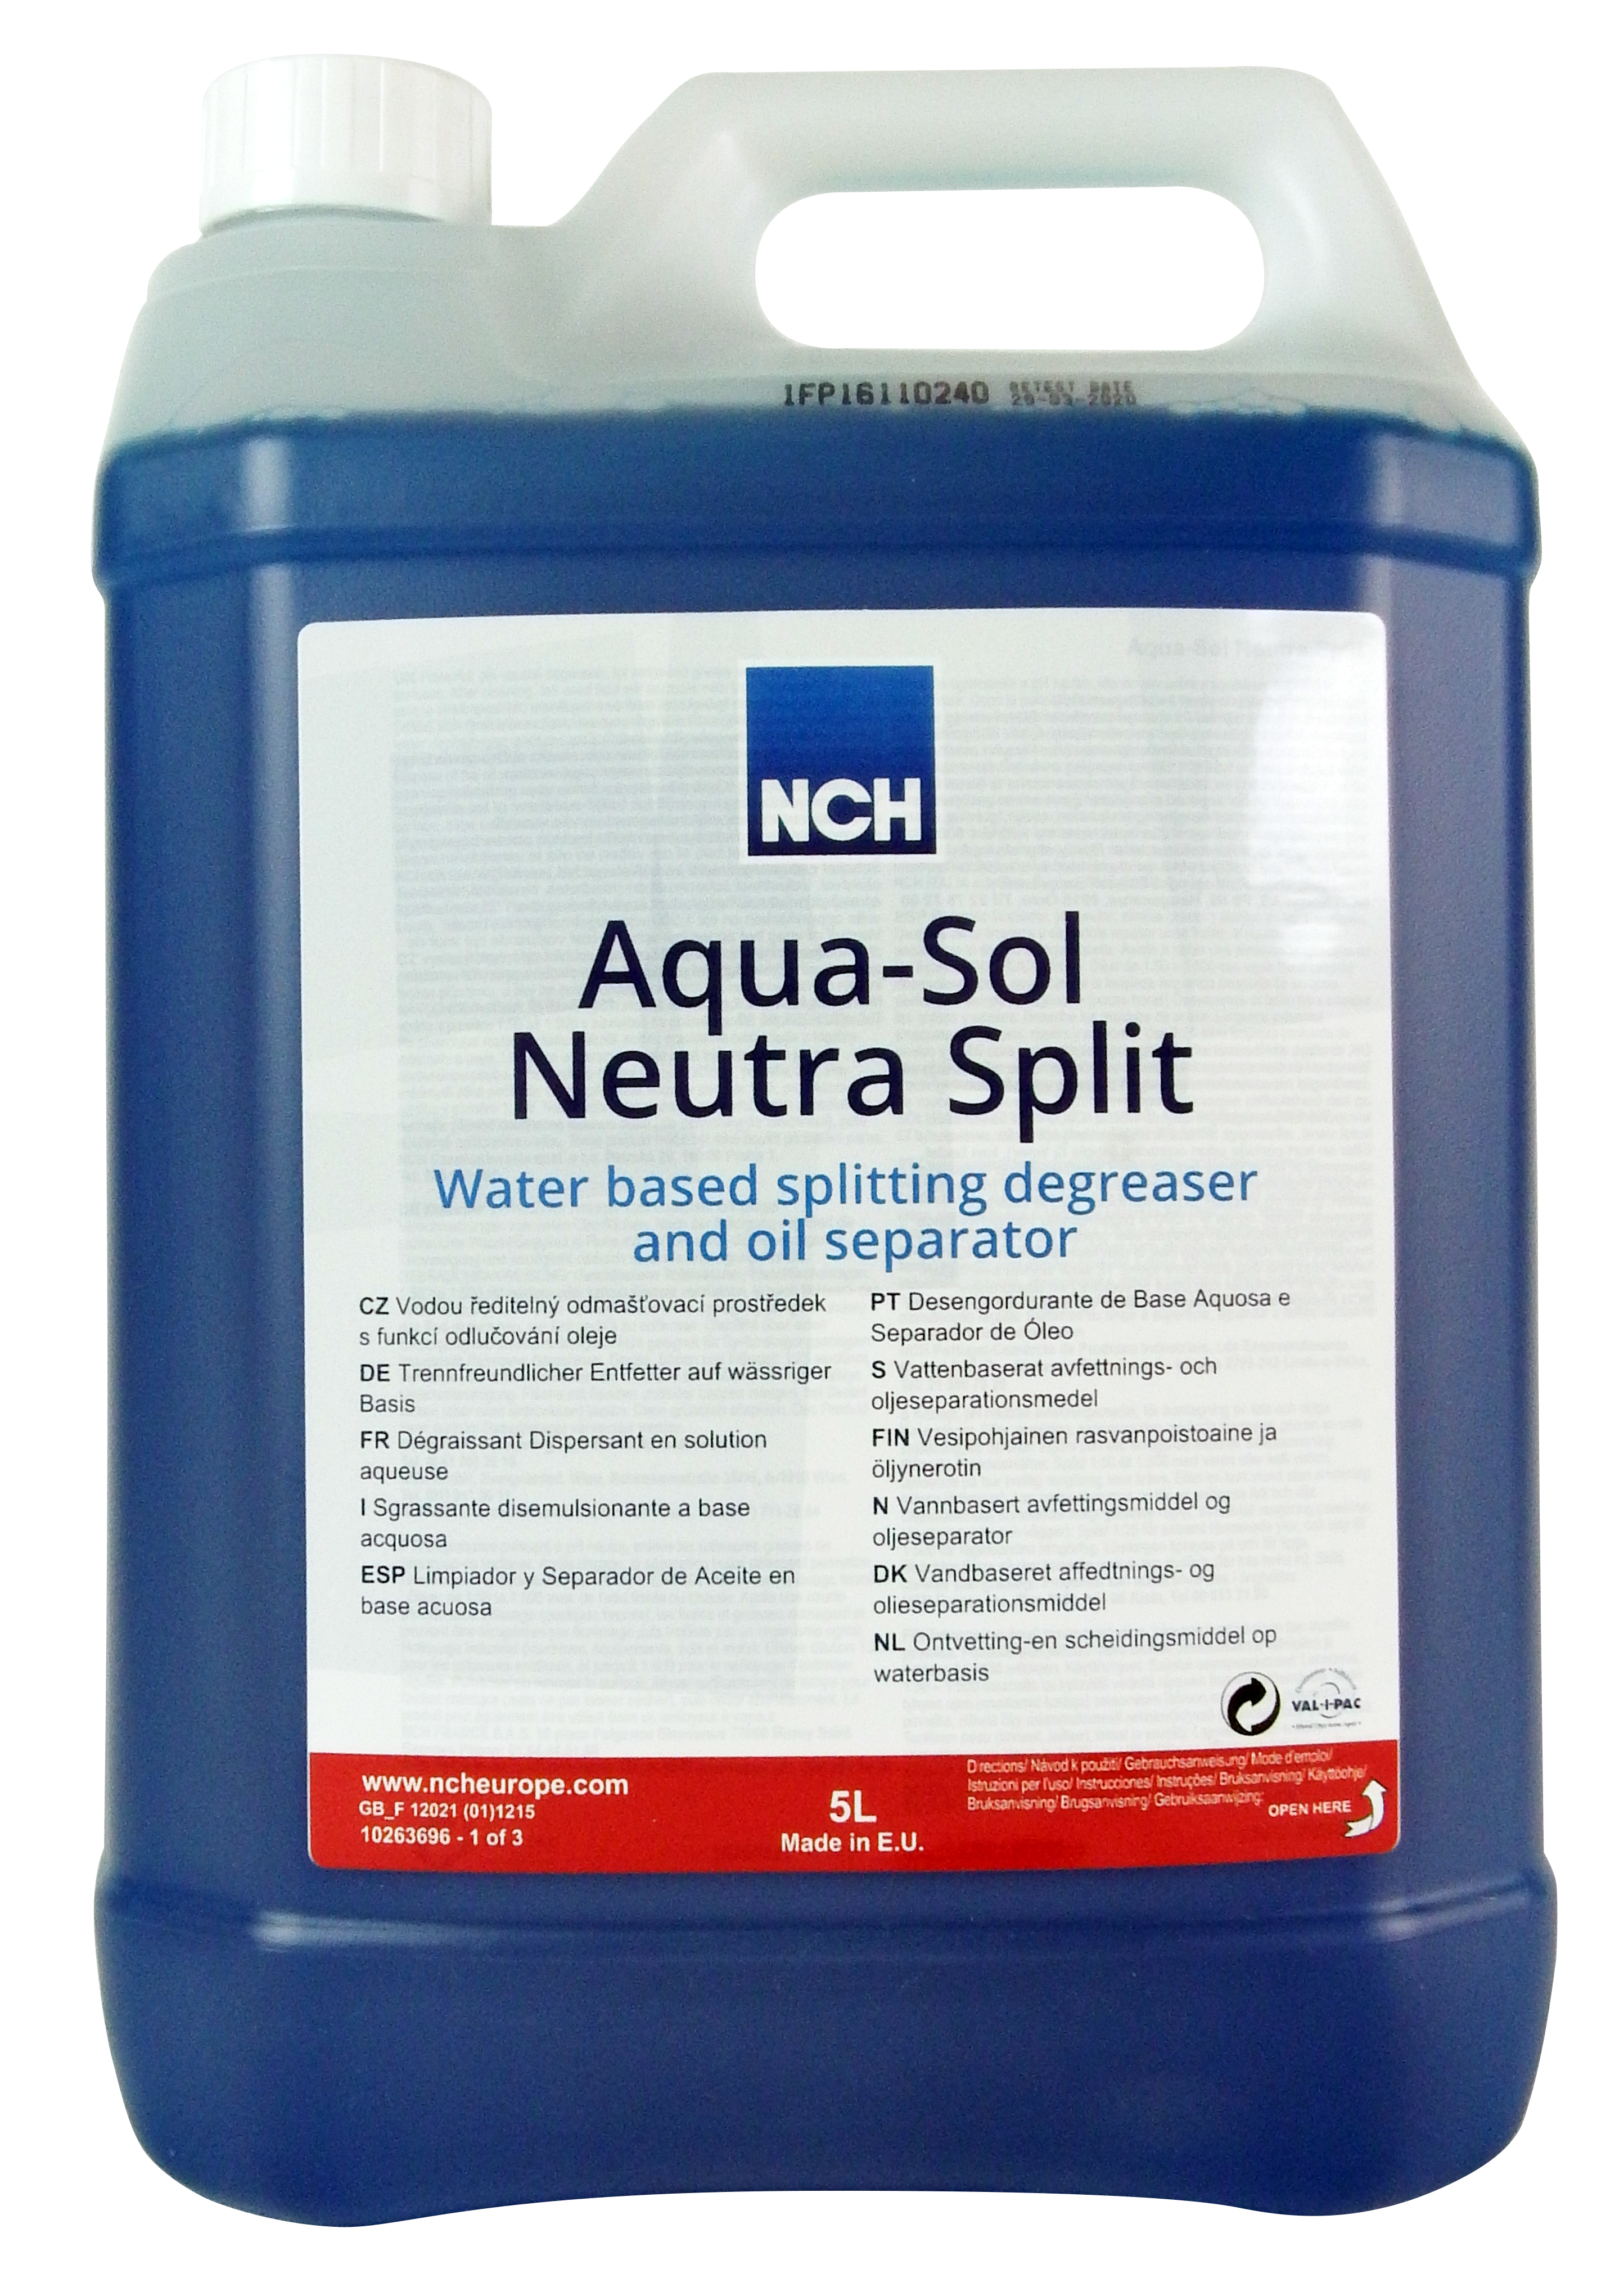 Aqua-Sol Neutra Split